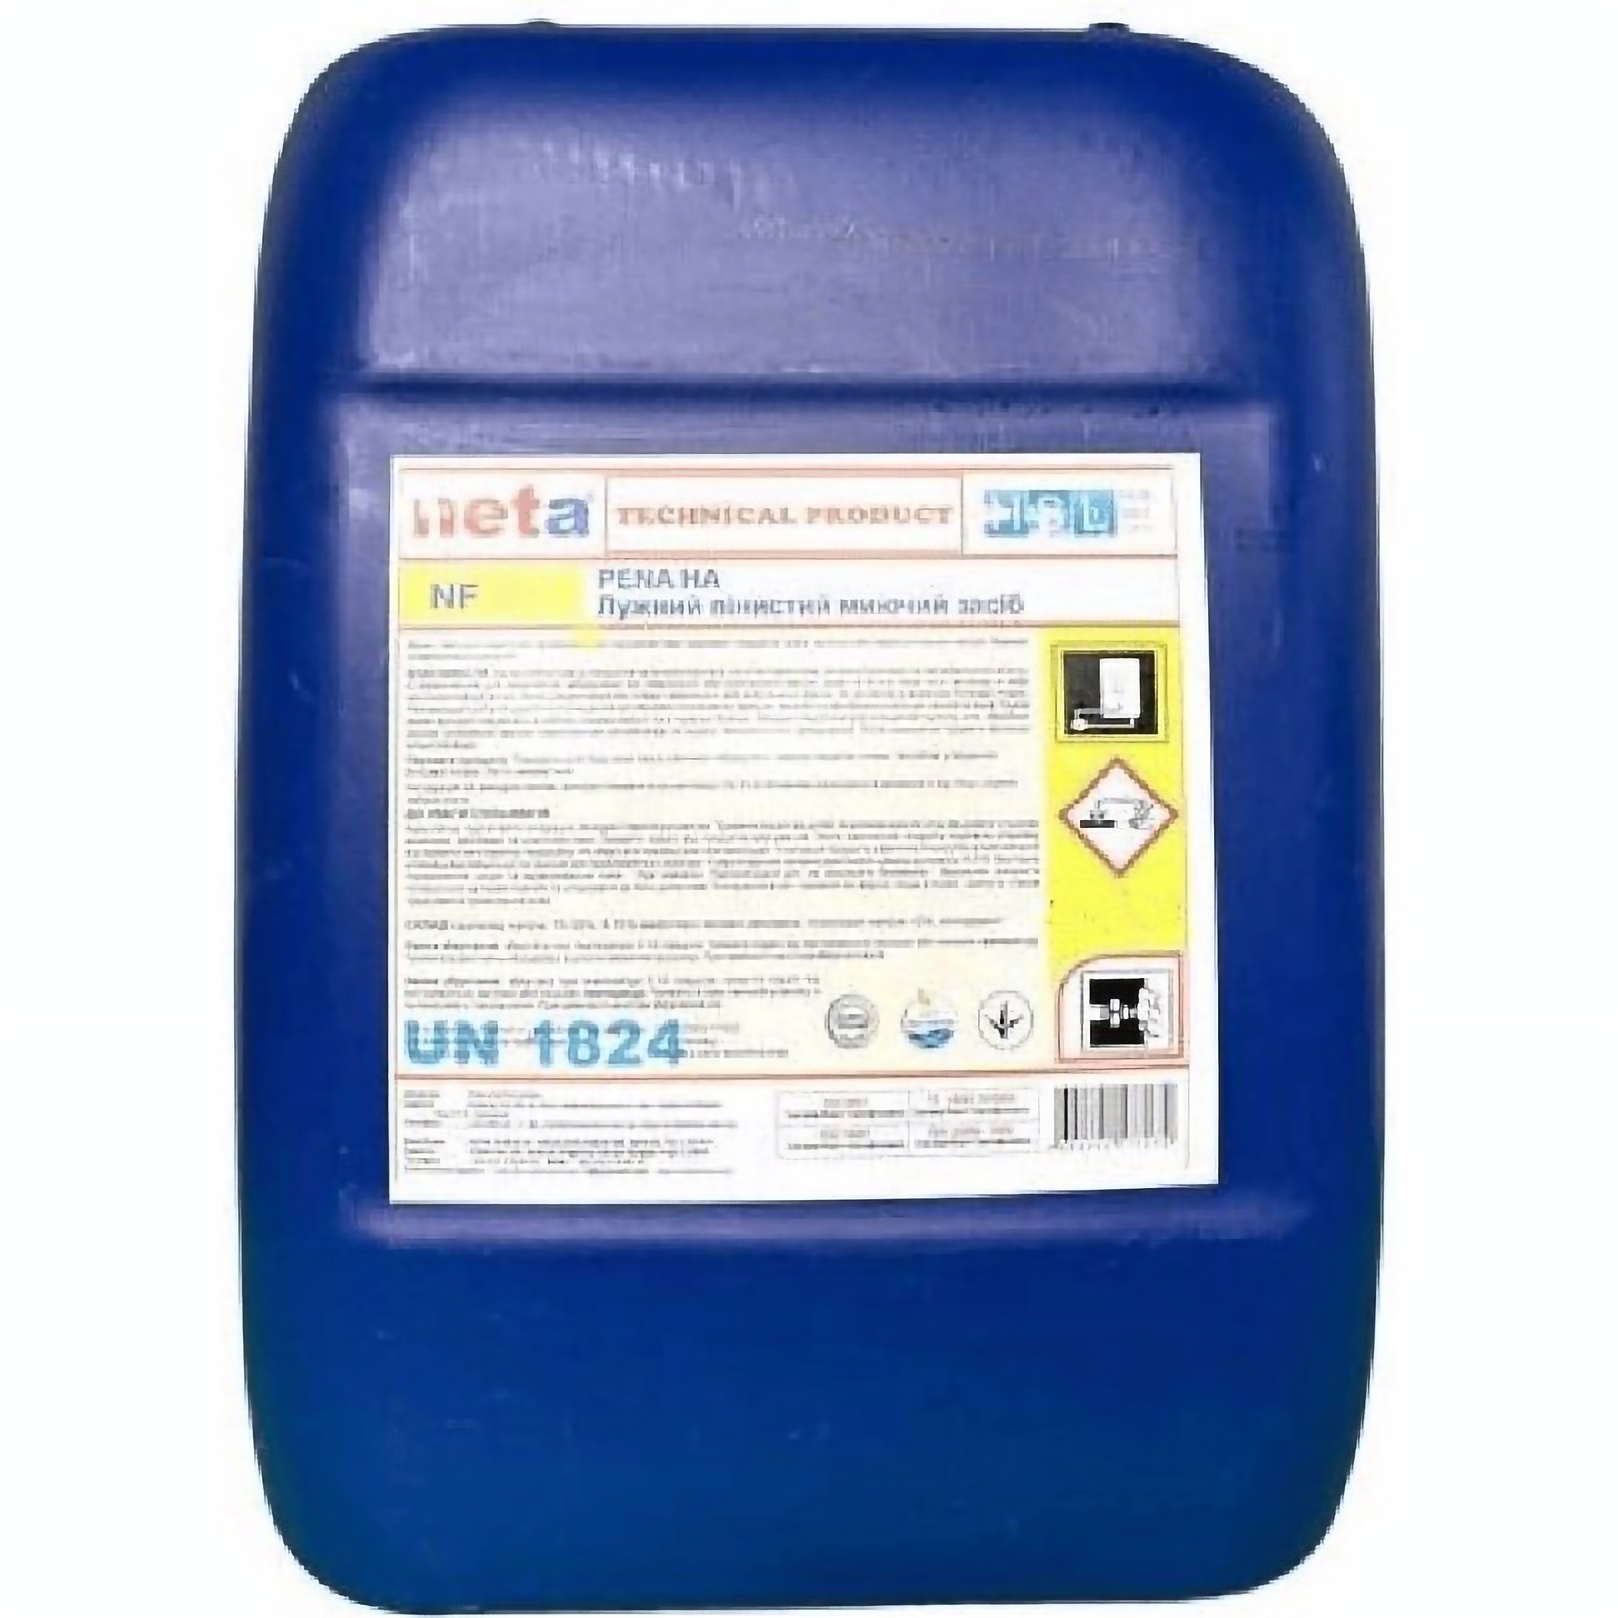 Хлорно-лужний засіб Neta NF 5 для очищення поверхонь та обладнання в харчовій промисловості концентрат 1:20, 23 кг - фото 1